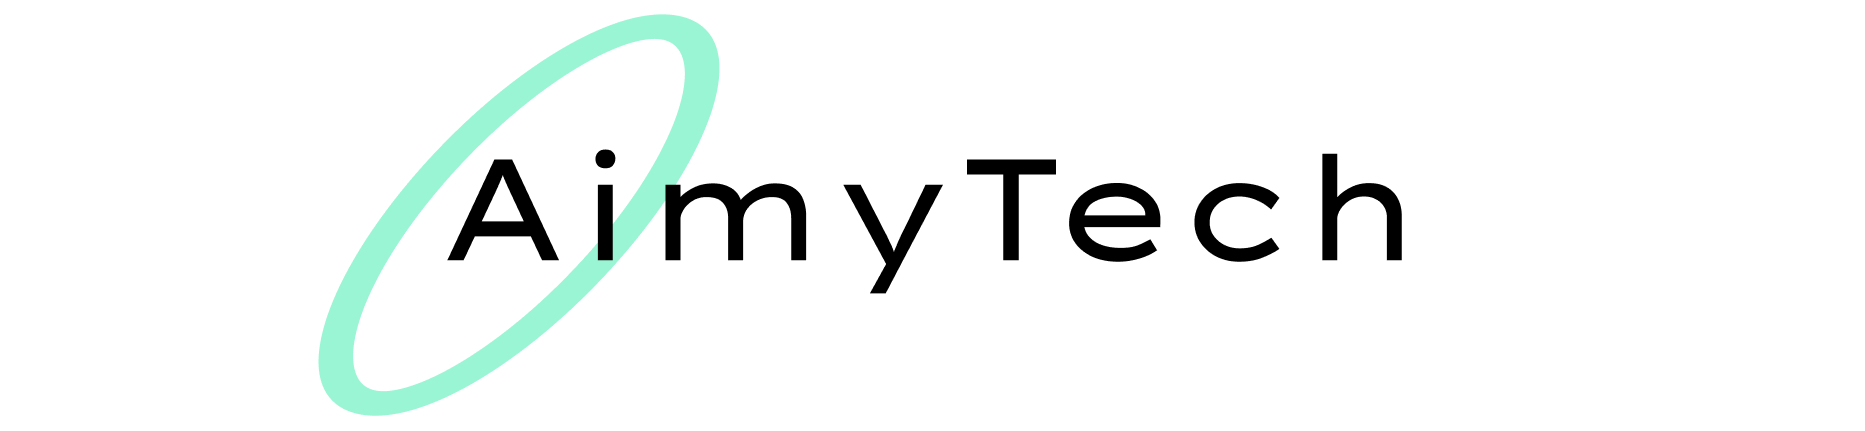 AimyTech株式会社